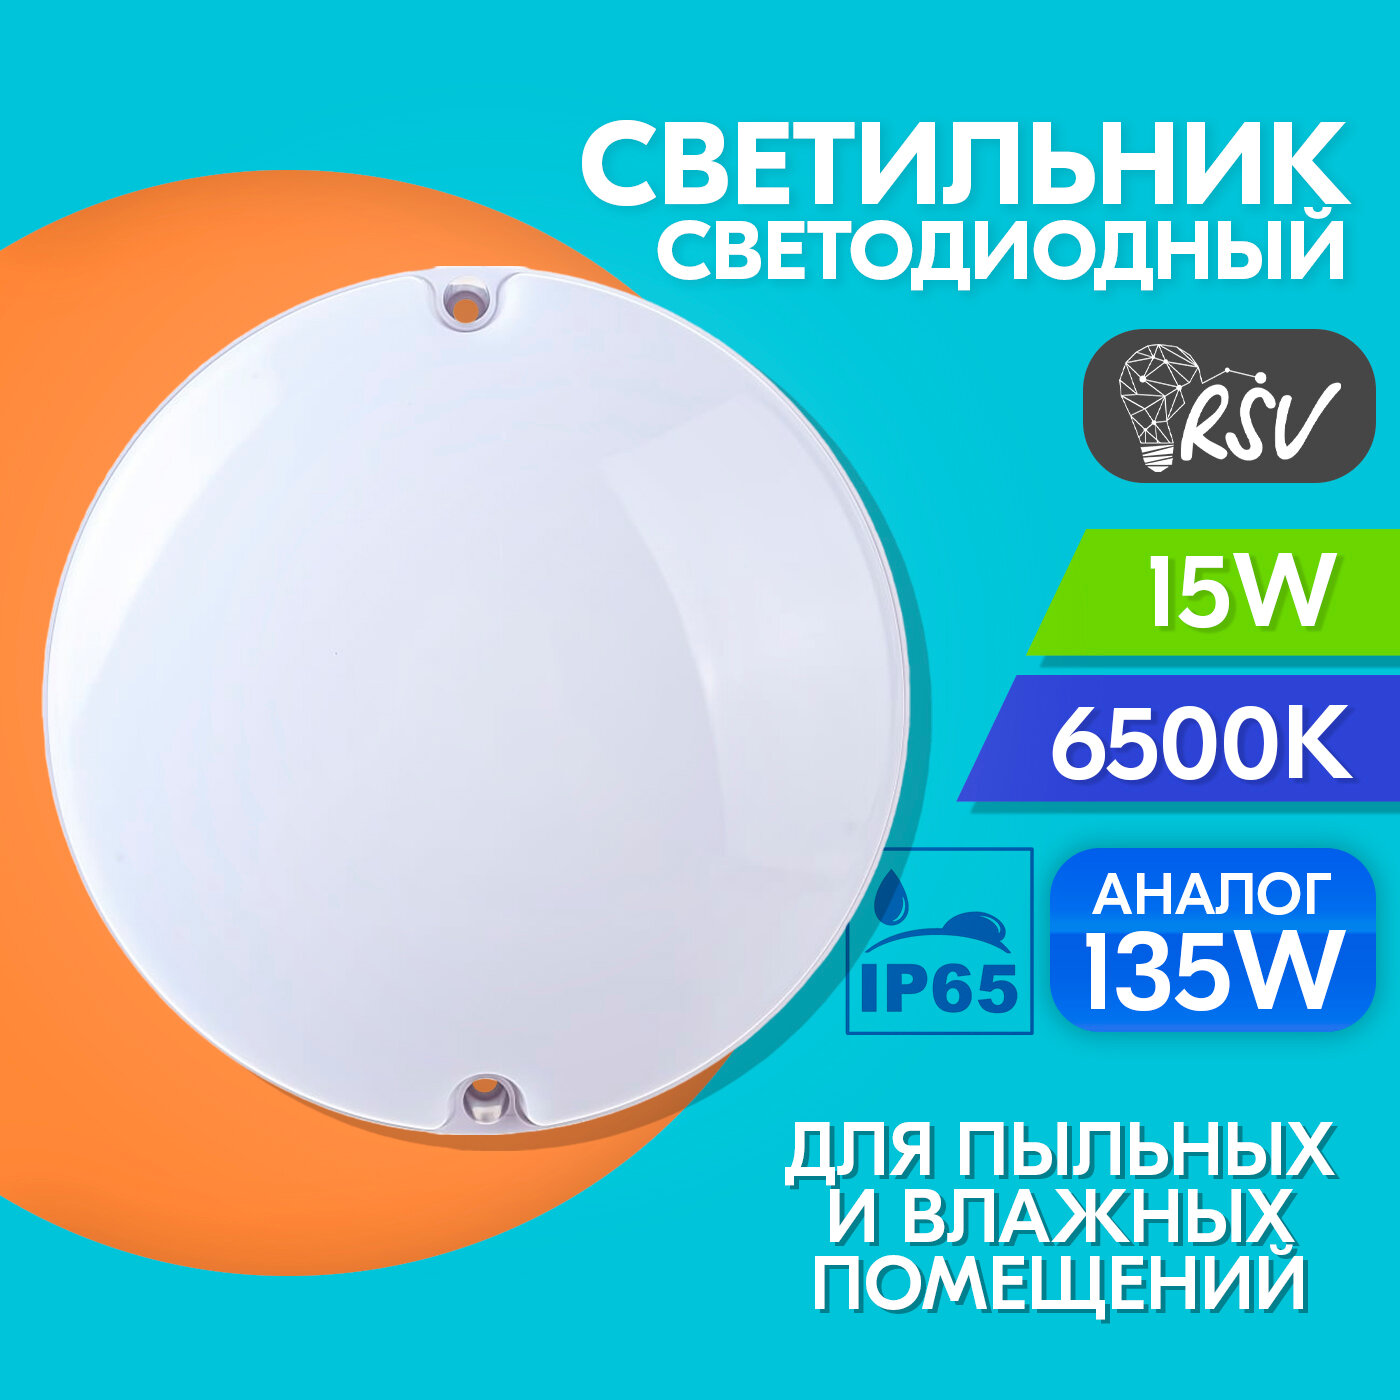 Светильник светодиодный пылевлагозащищенный RSV SPP 15W, холодный свет 6500K, для бани и сауны, IP65